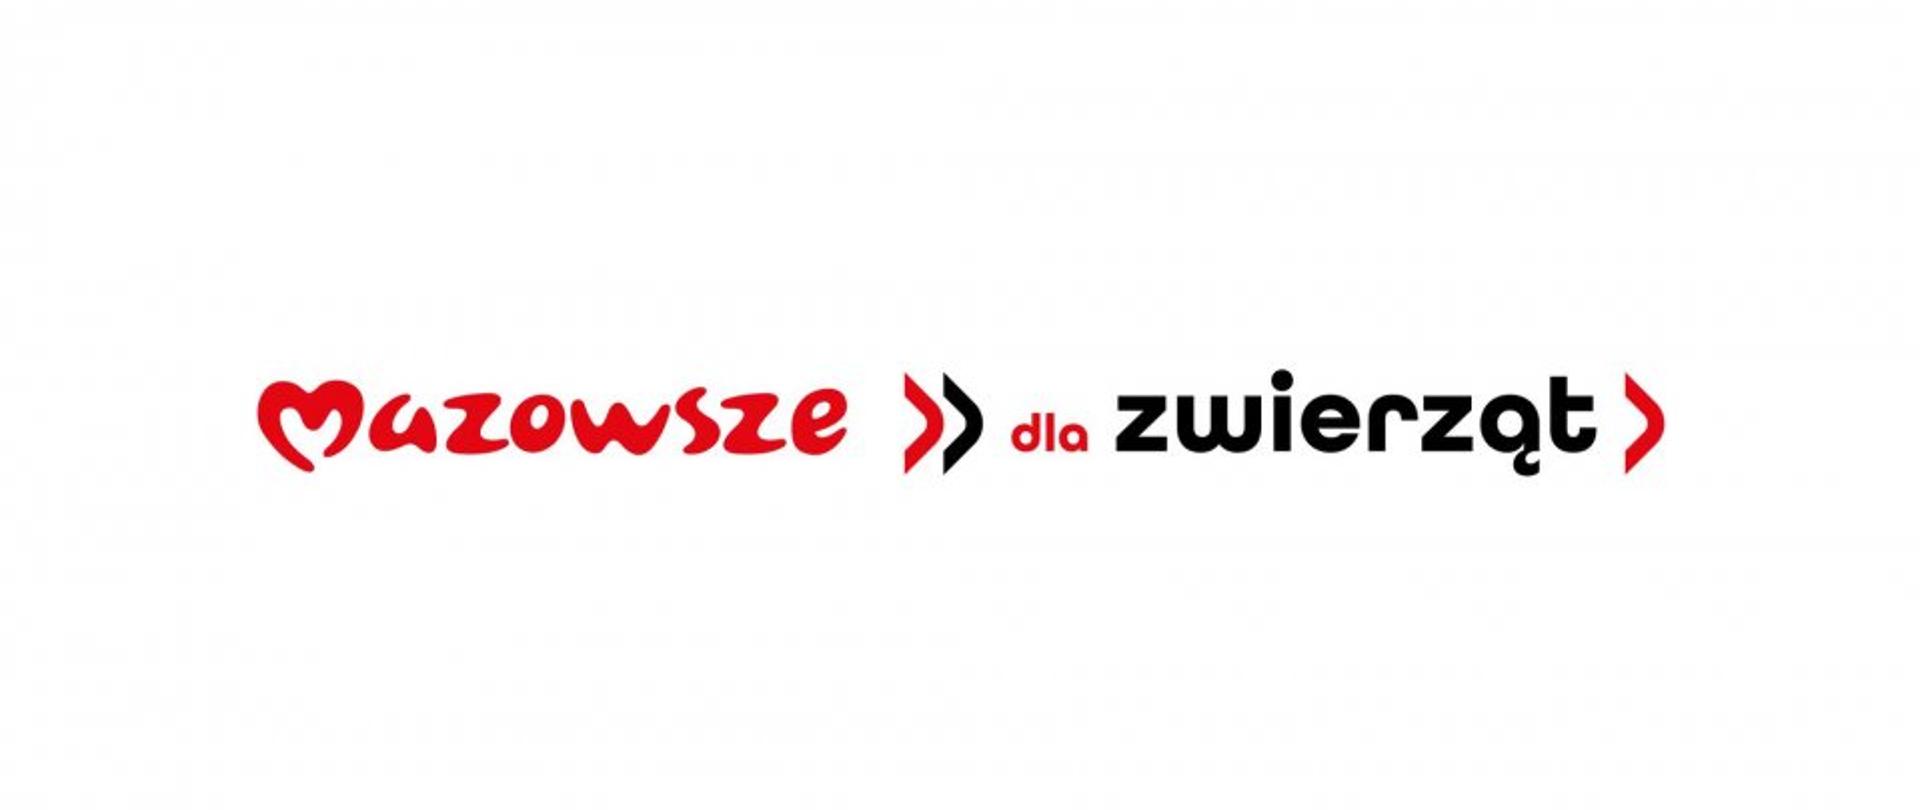 Logotyp Mazowsze dla zwierząt